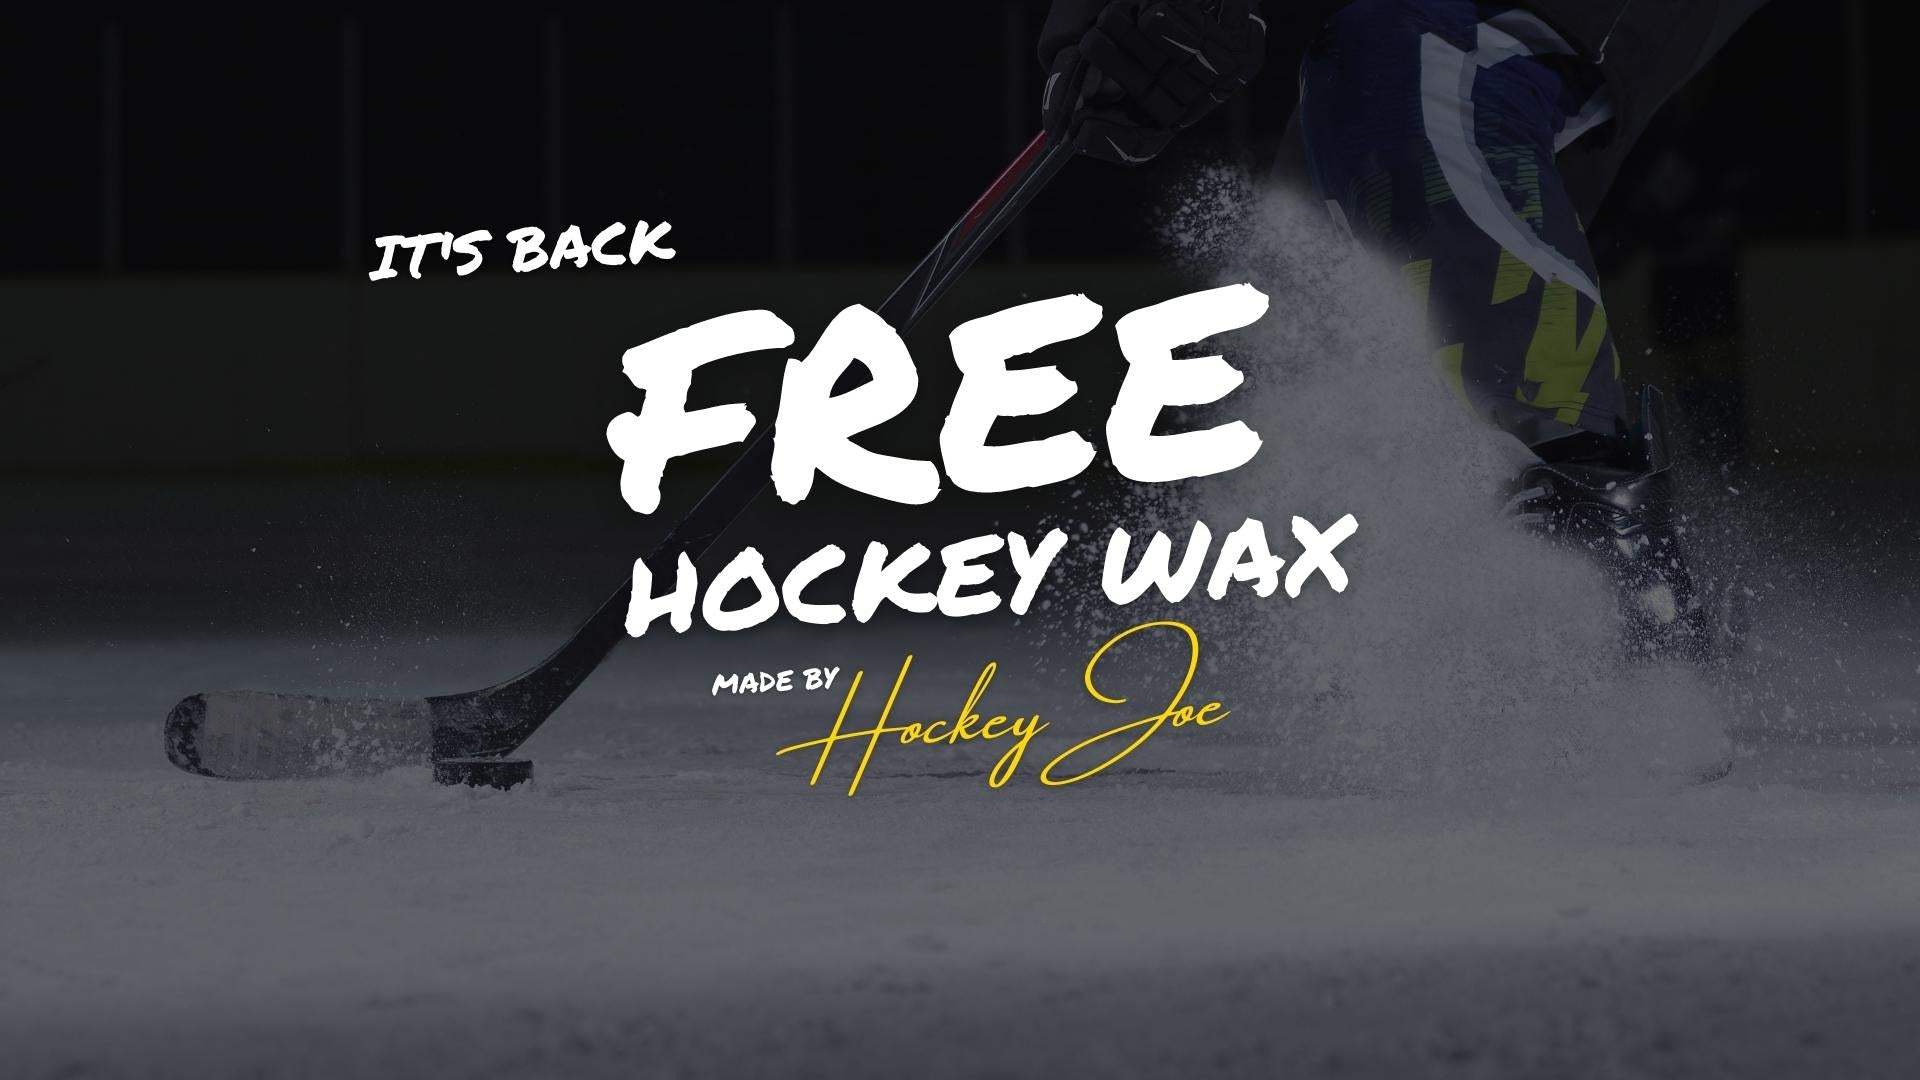 FREE Hockey Wax Is Back